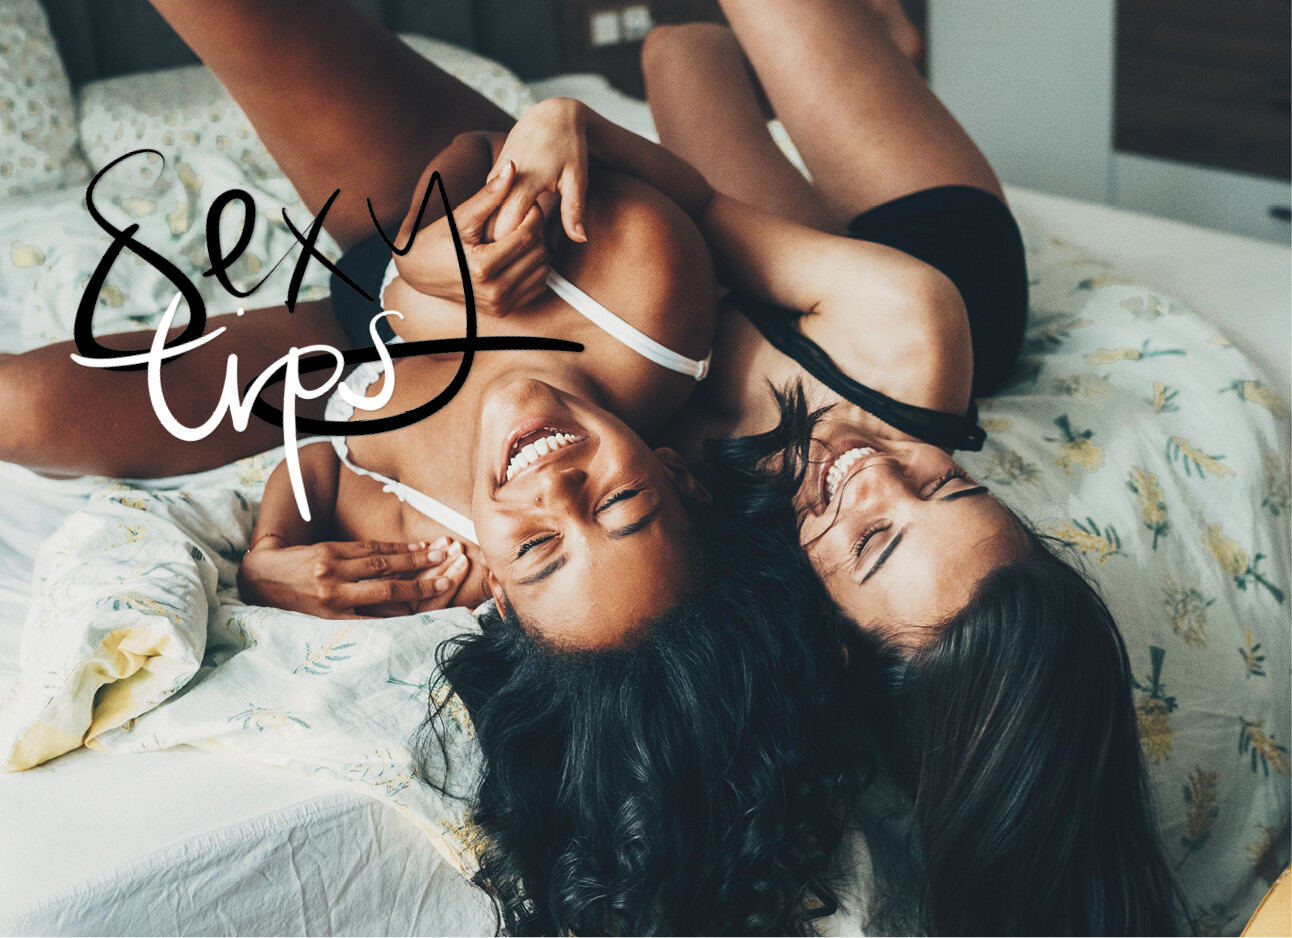 twee vrouwen in bed in lingerie lachen met elkaar